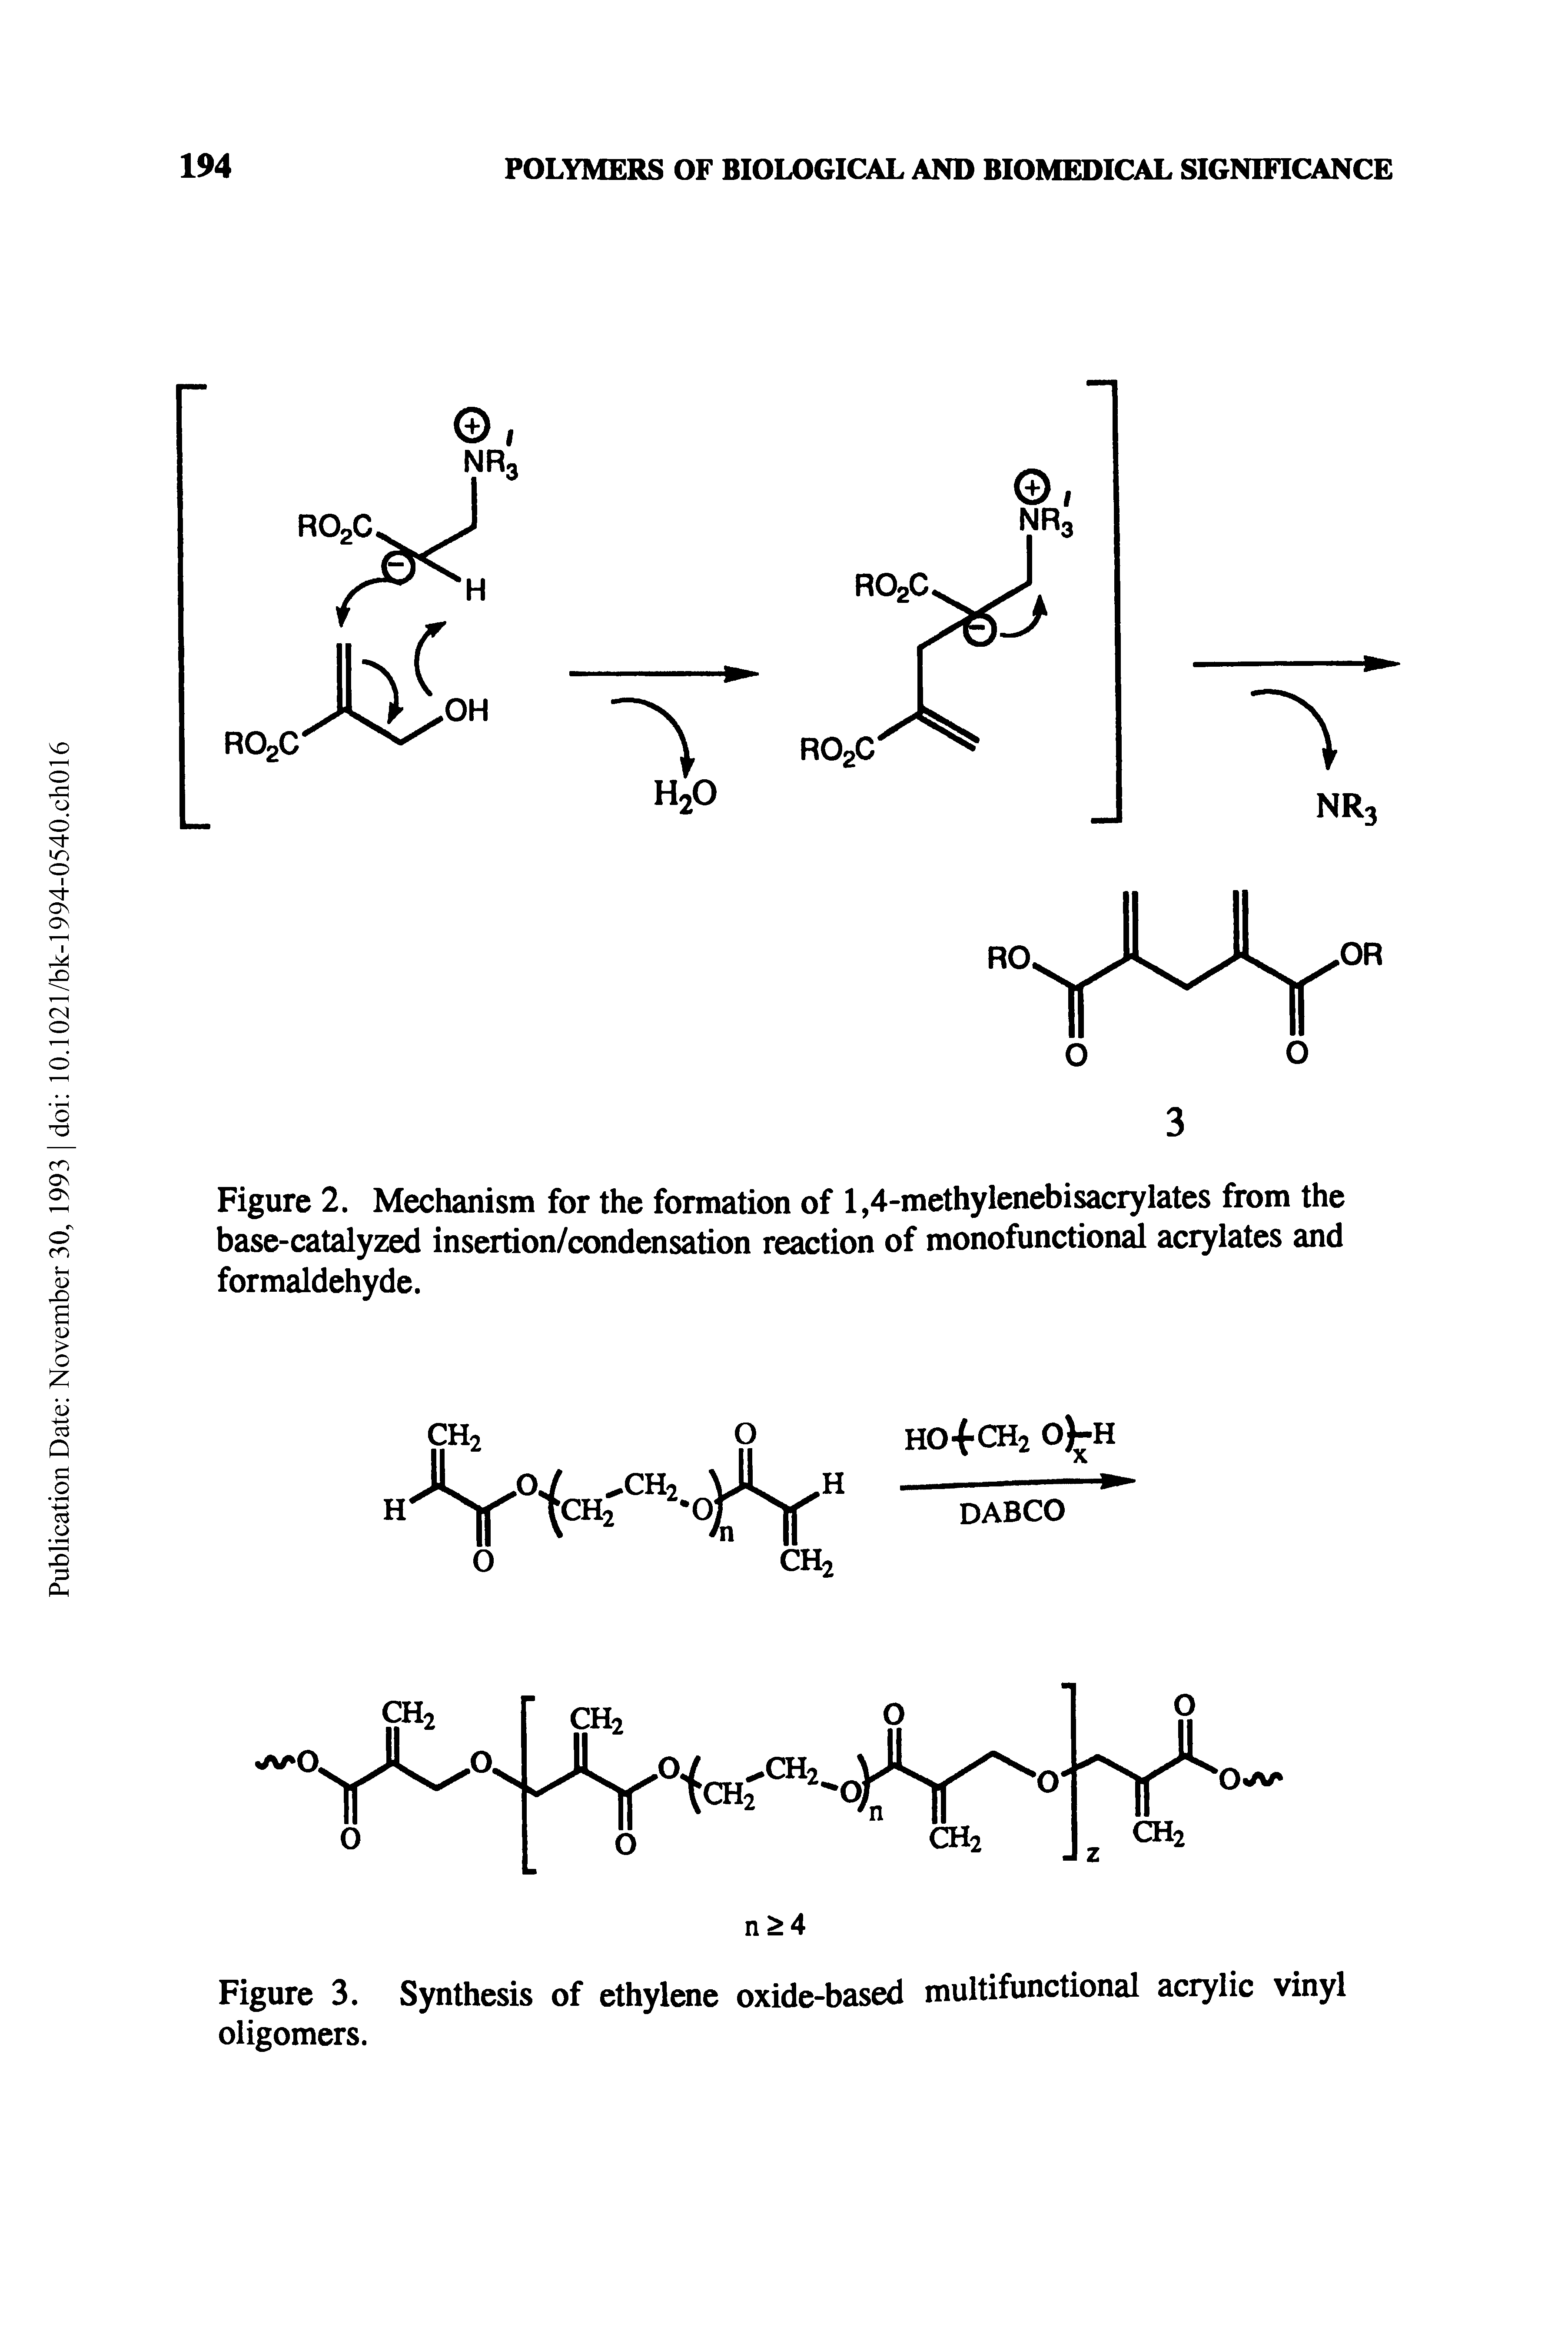 Figure 3. Synthesis of ethylene oxide-based multifunctional acrylic vinyl oligomers.